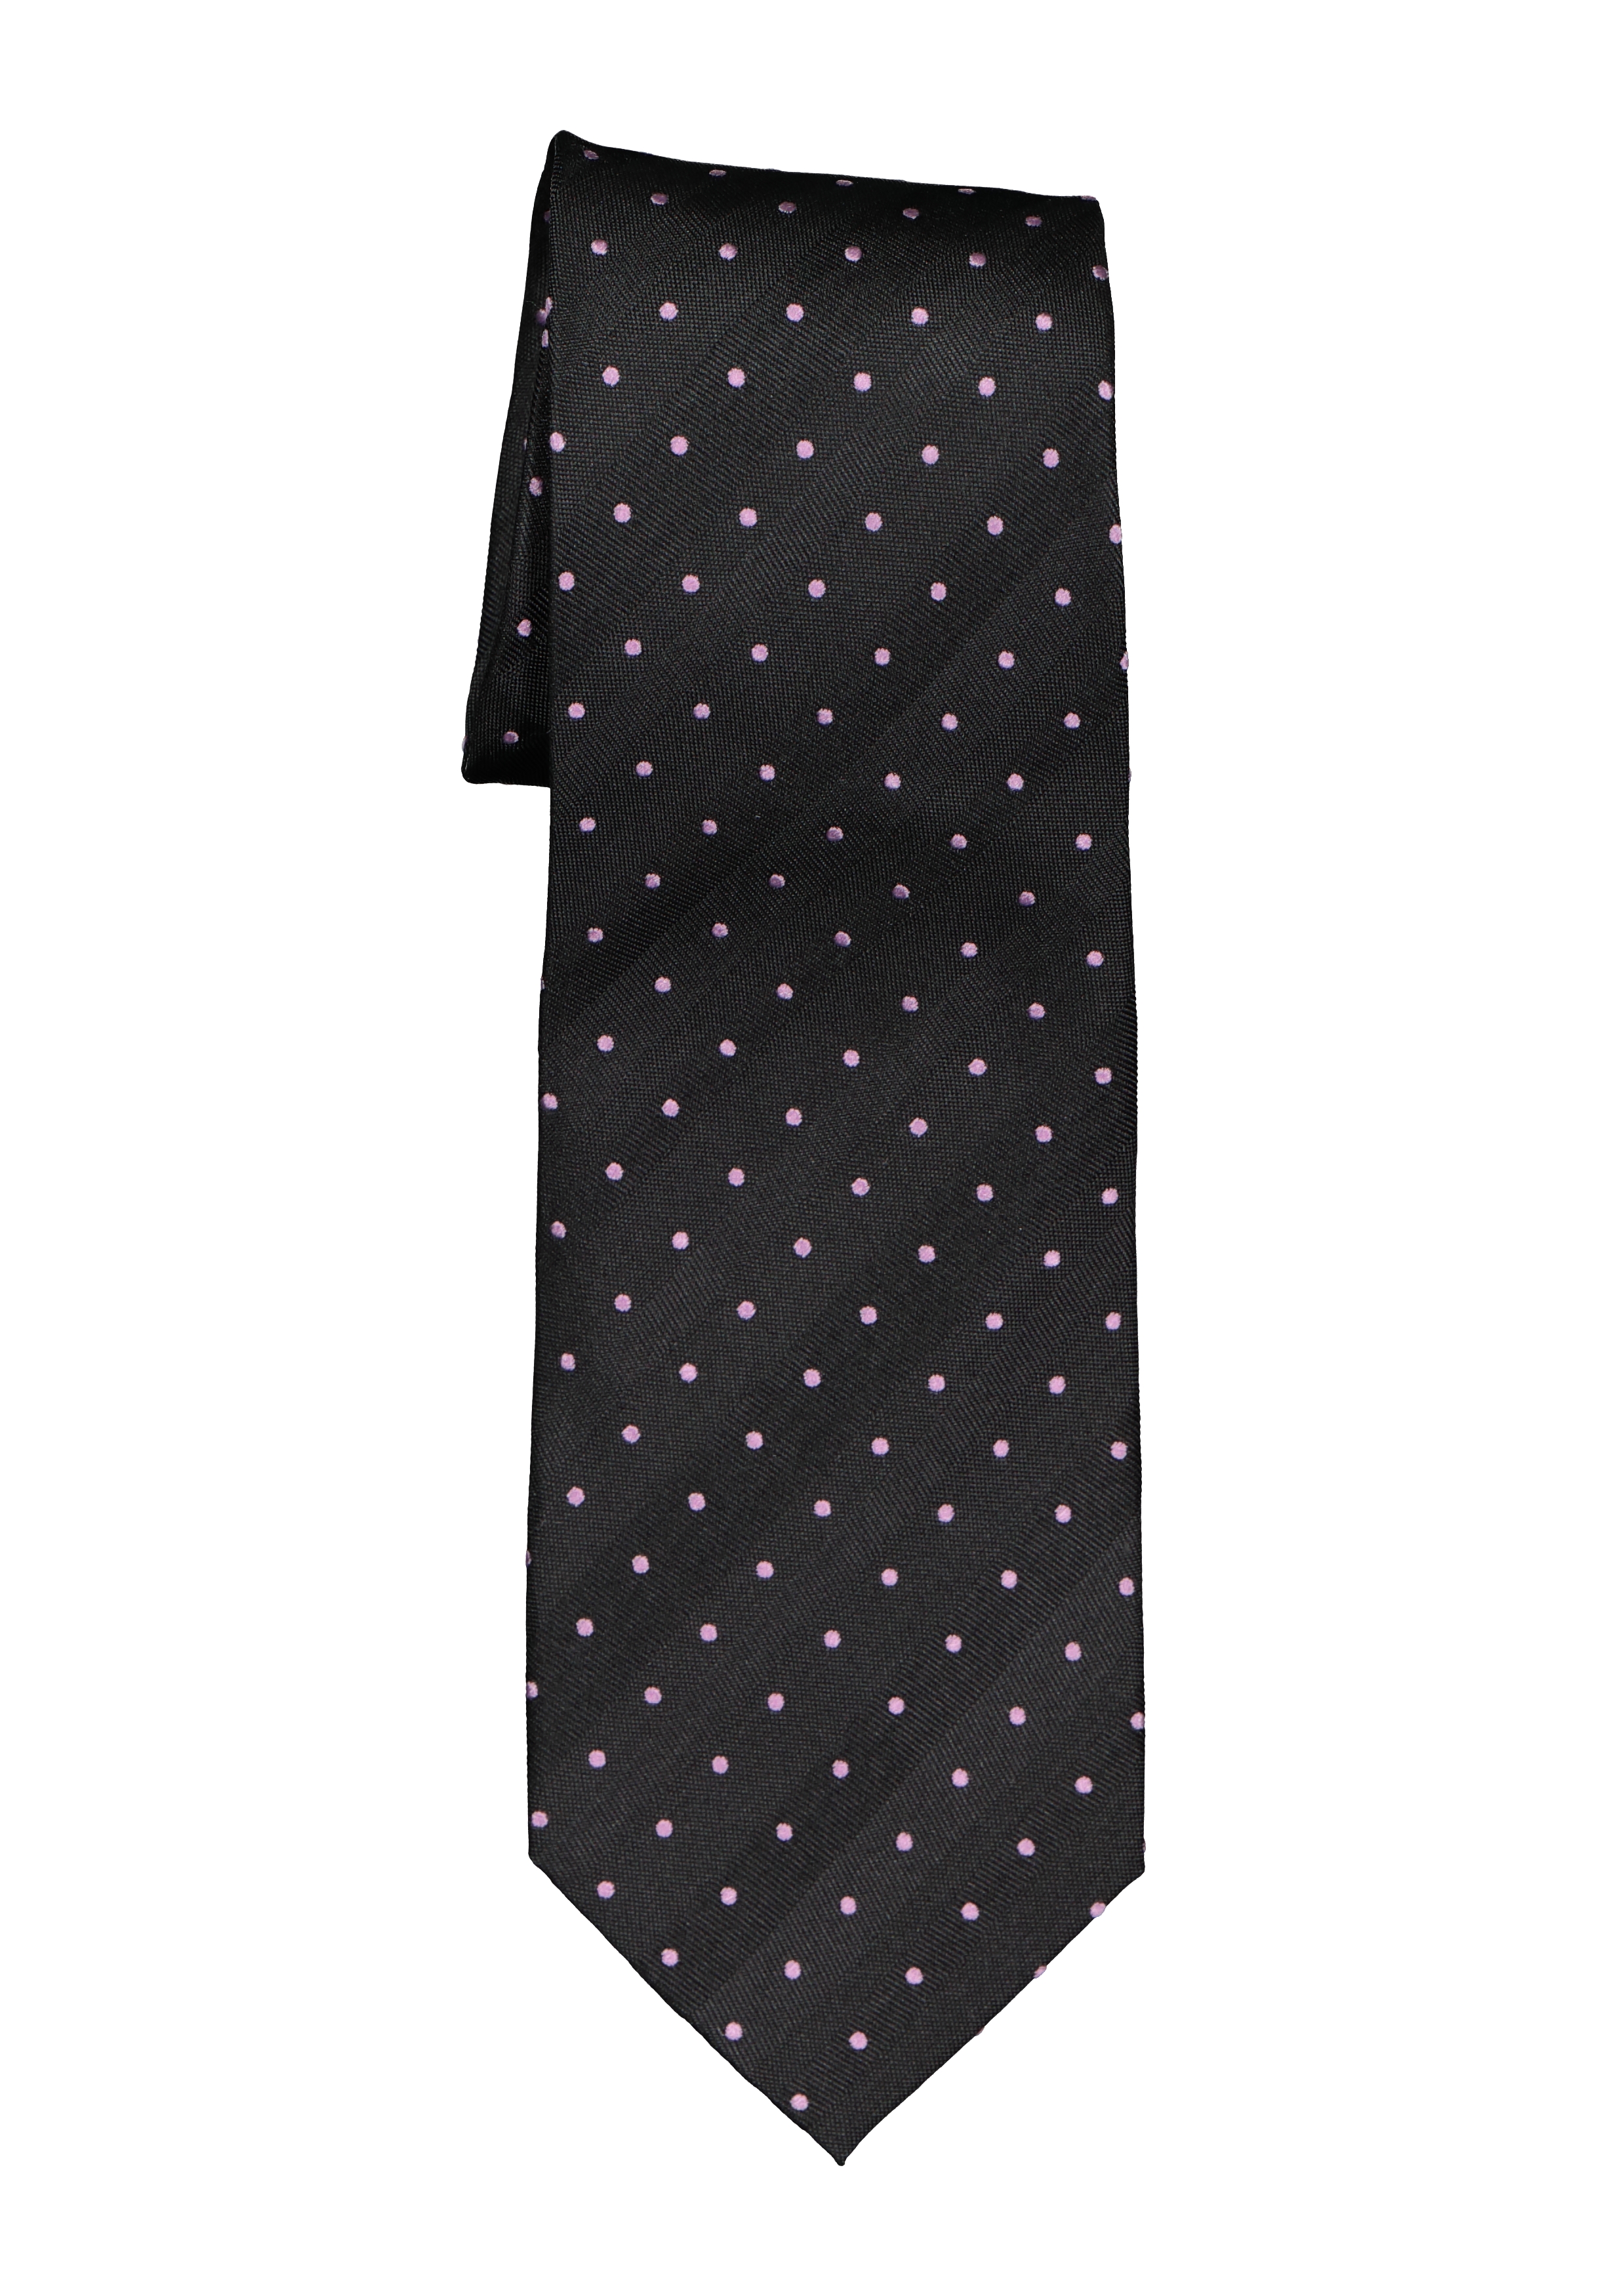 verdiepen naaien metalen Eterna stropdas, zwart met roze stip - bestel uw stropdas online. Gratis...